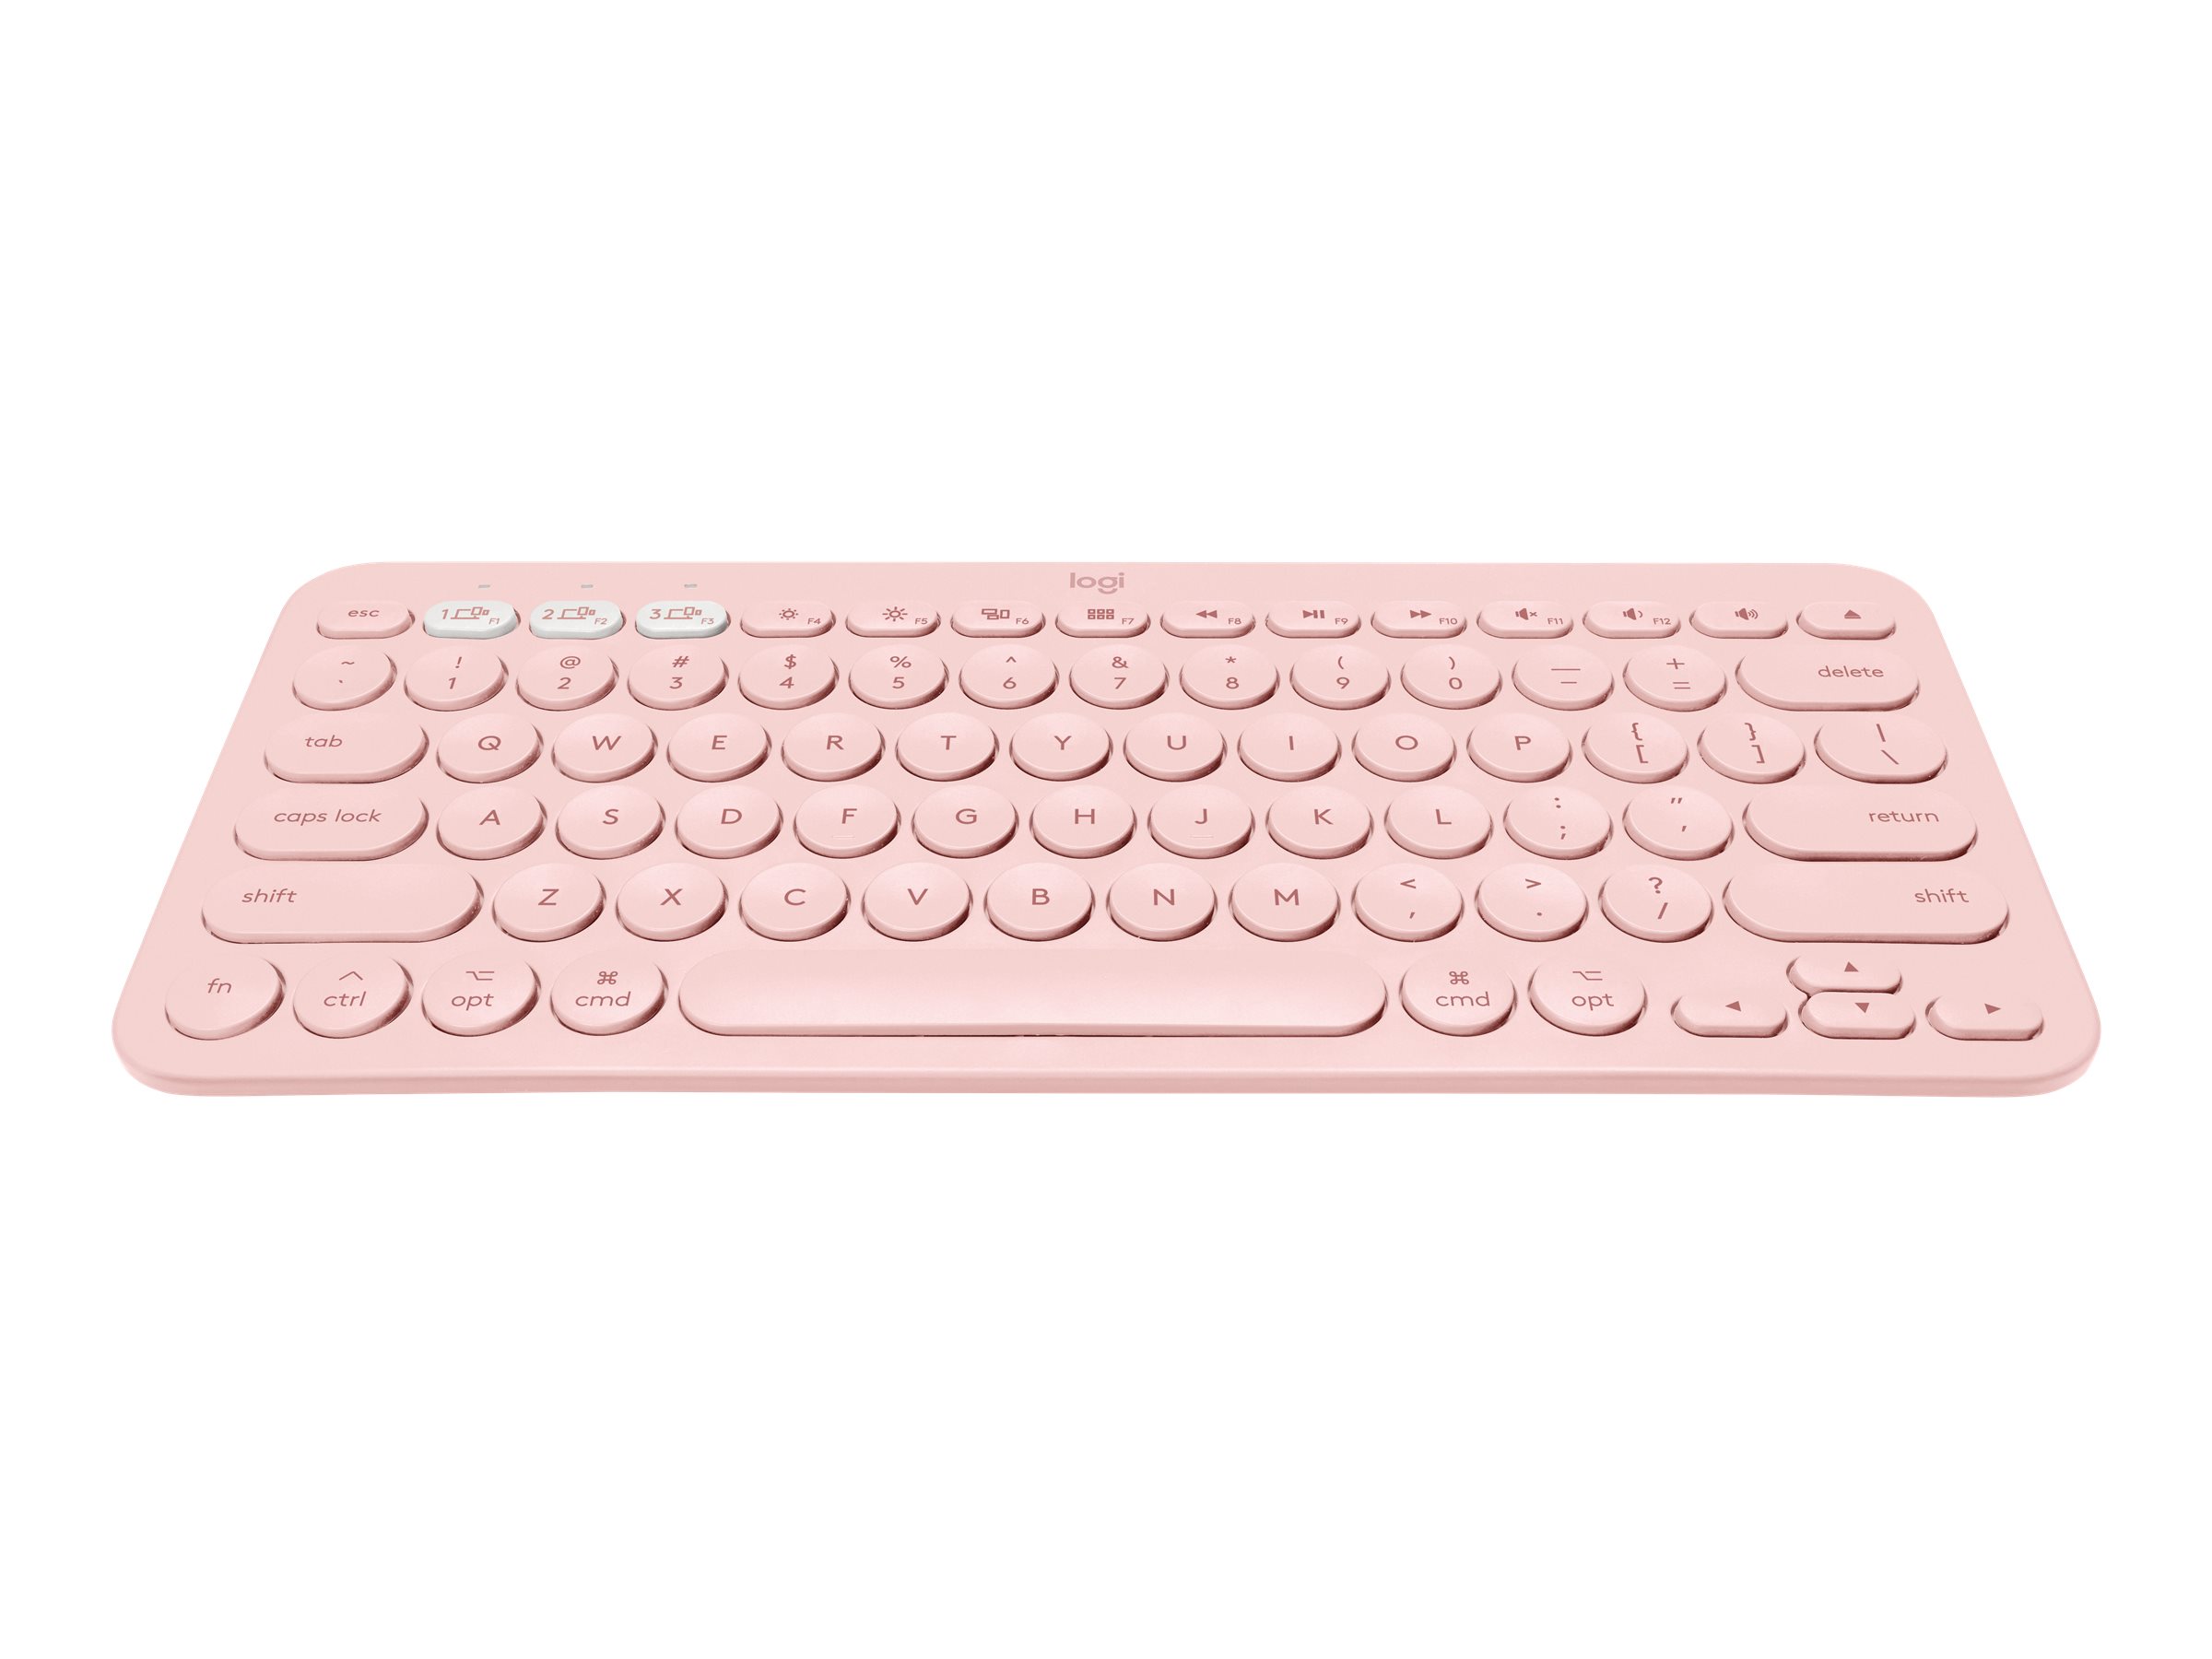 Keyboard Bluetooth Mac K380 Multi-Device Logitech for